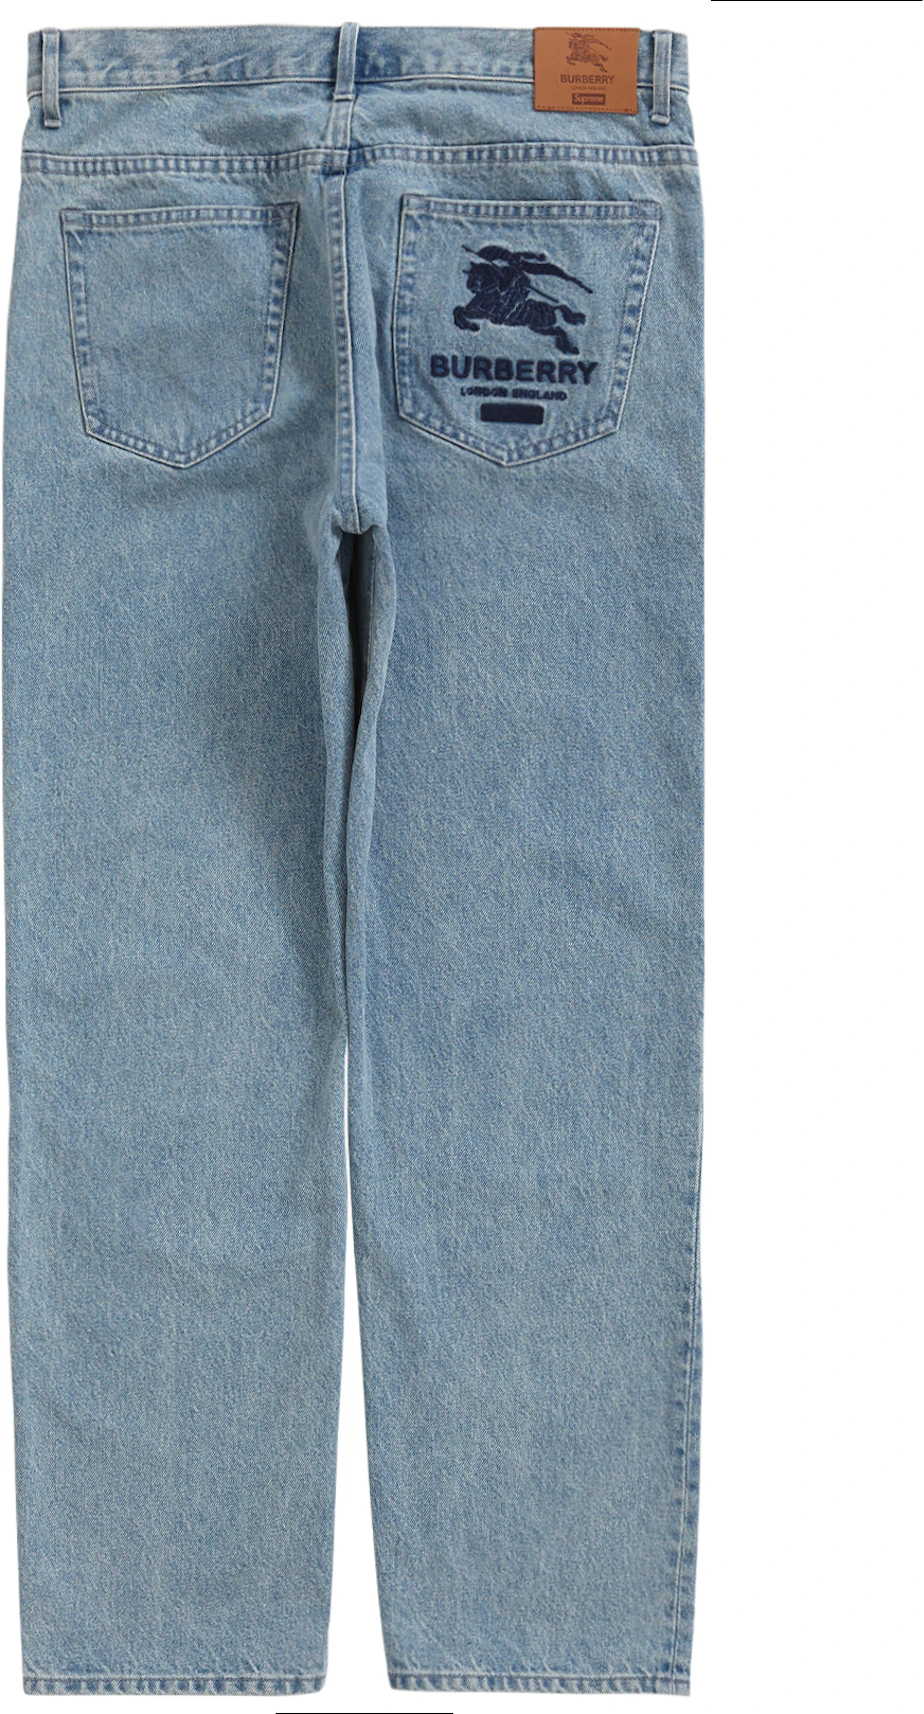 Actualizar 62+ imagen burberry jeans pants